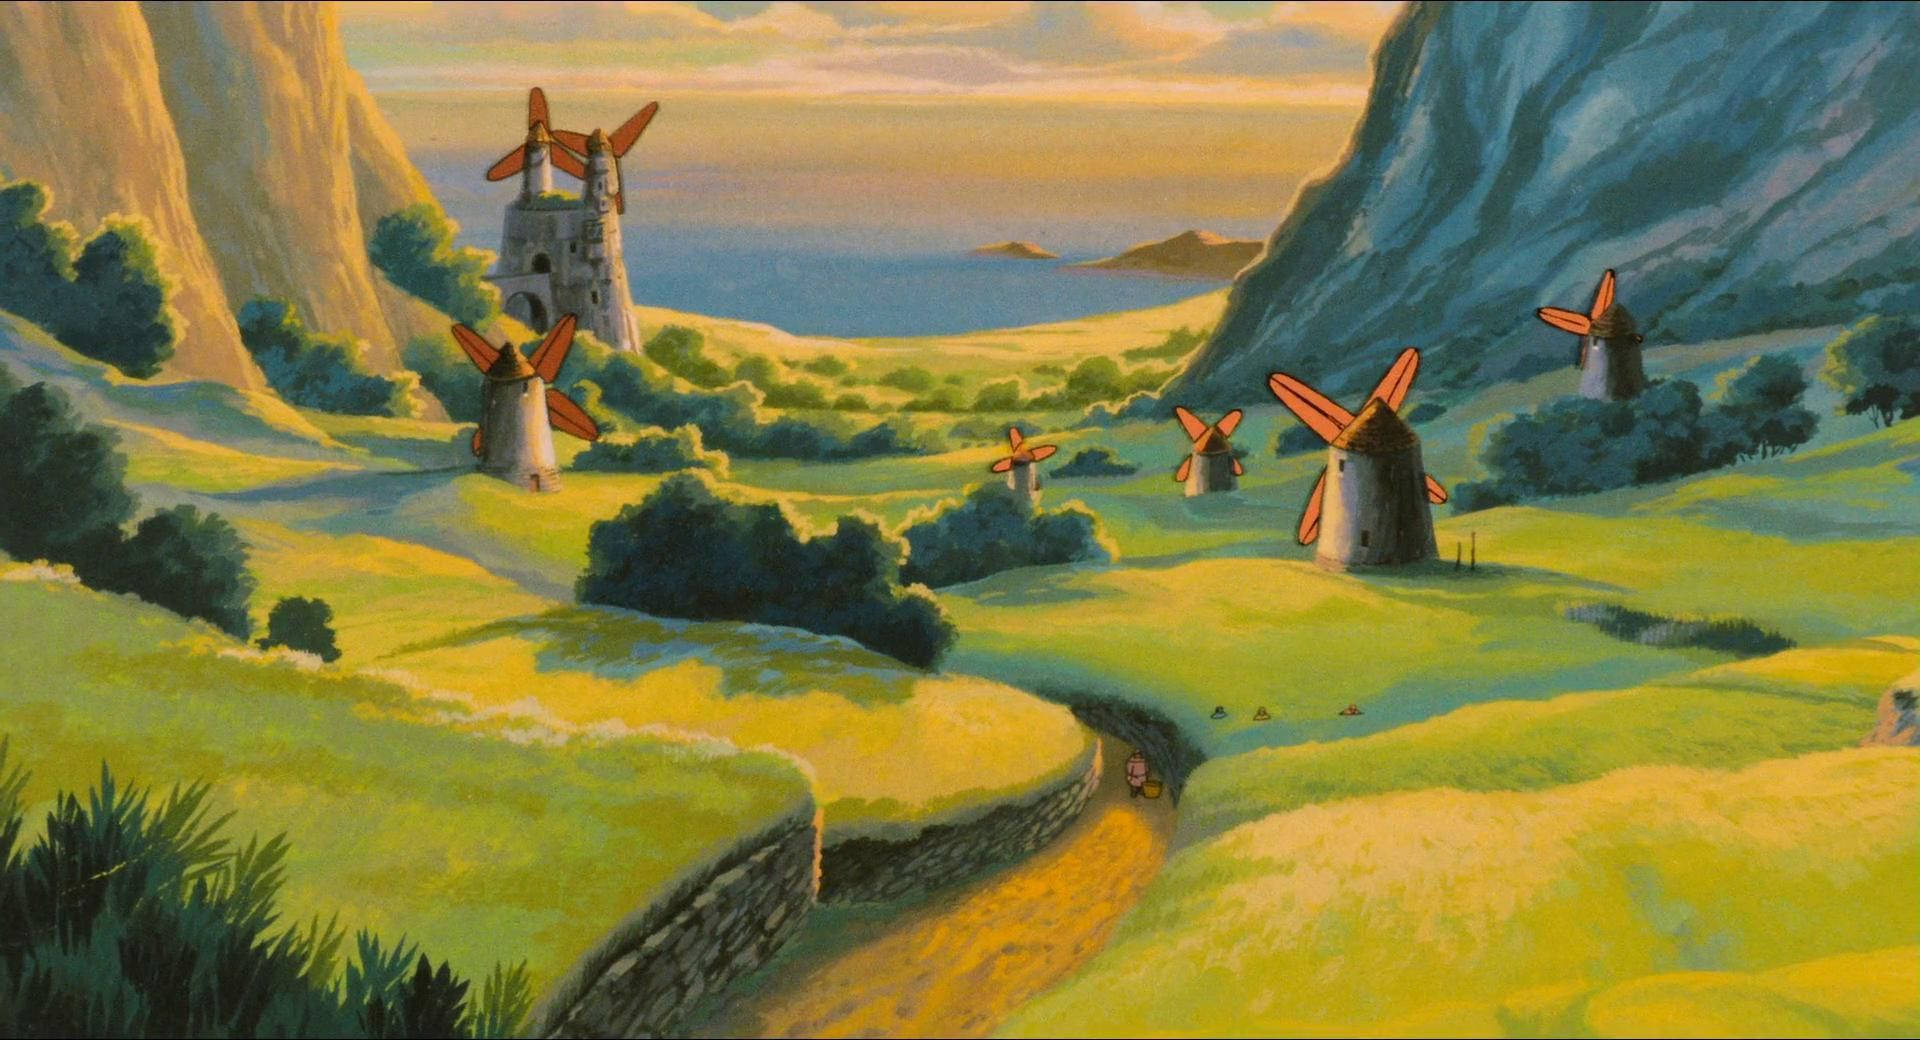 Studio Ghibli Scenery With Windmills